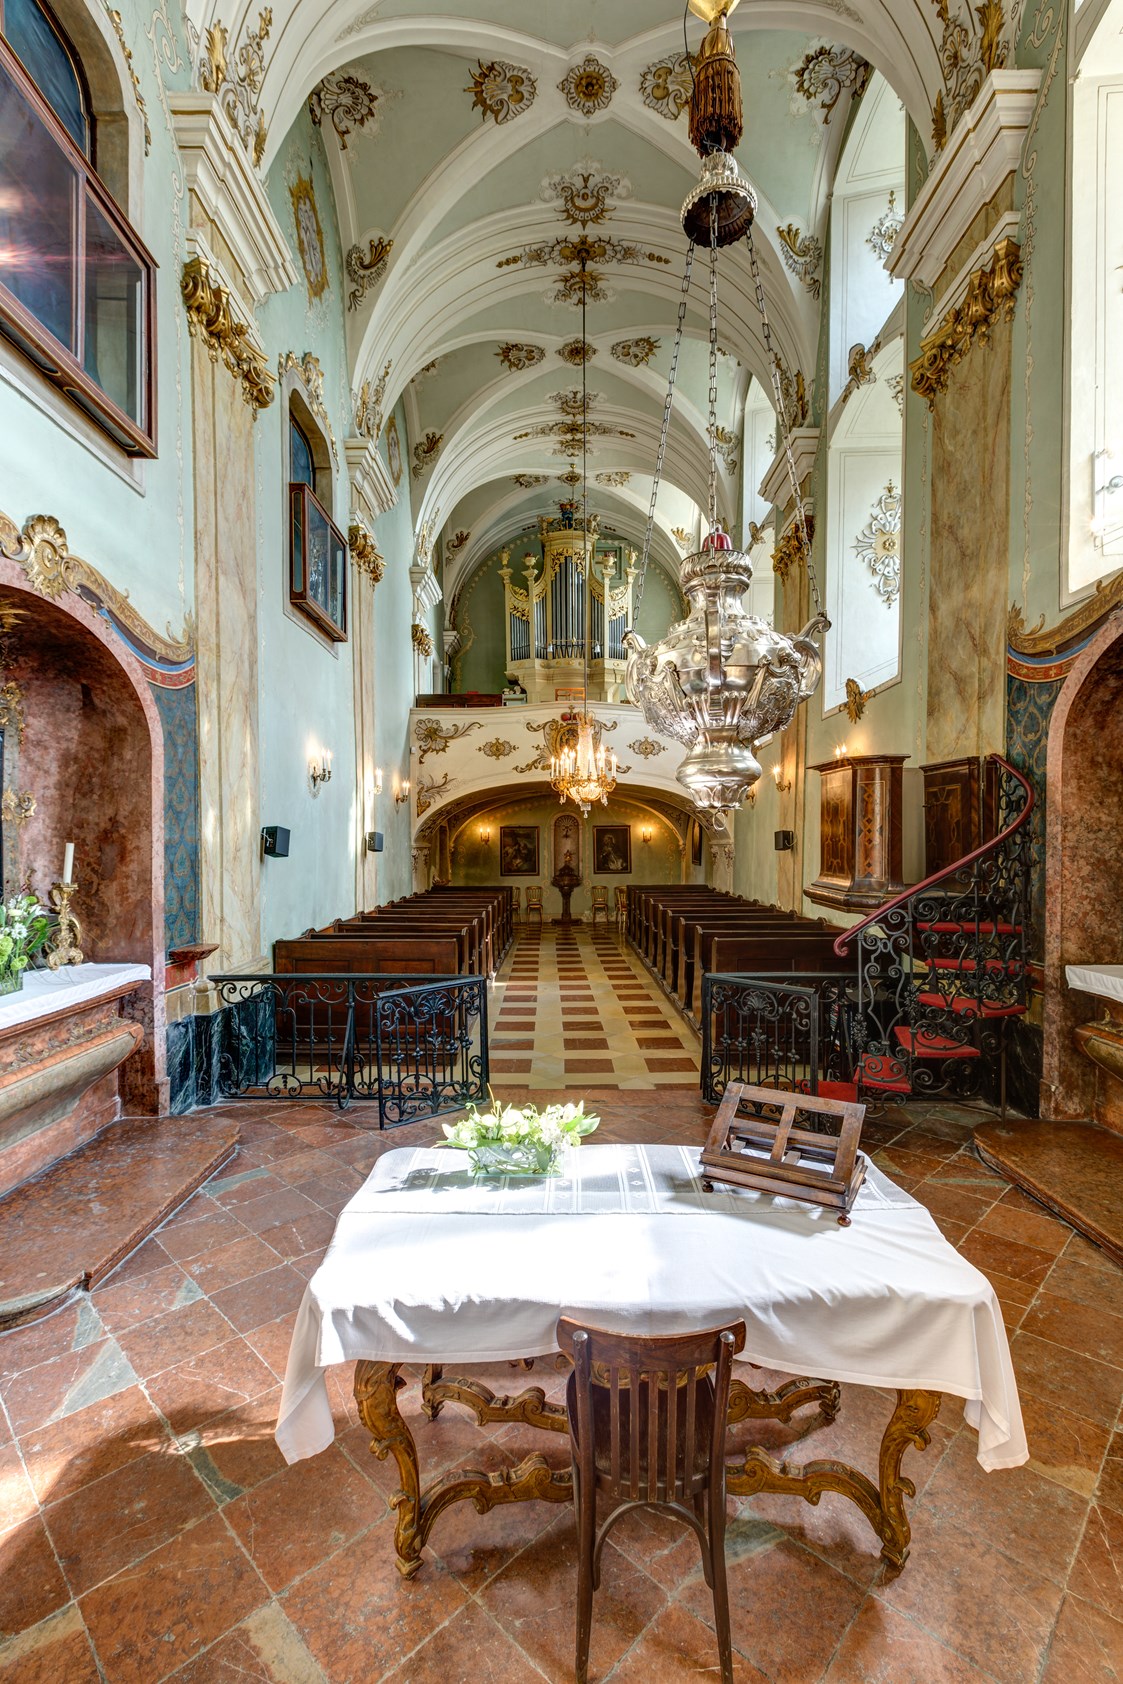 Hochzeit: In der Schlosskapelle können kirchliche Trauungen abgehalten werden. - Schloss Esterházy